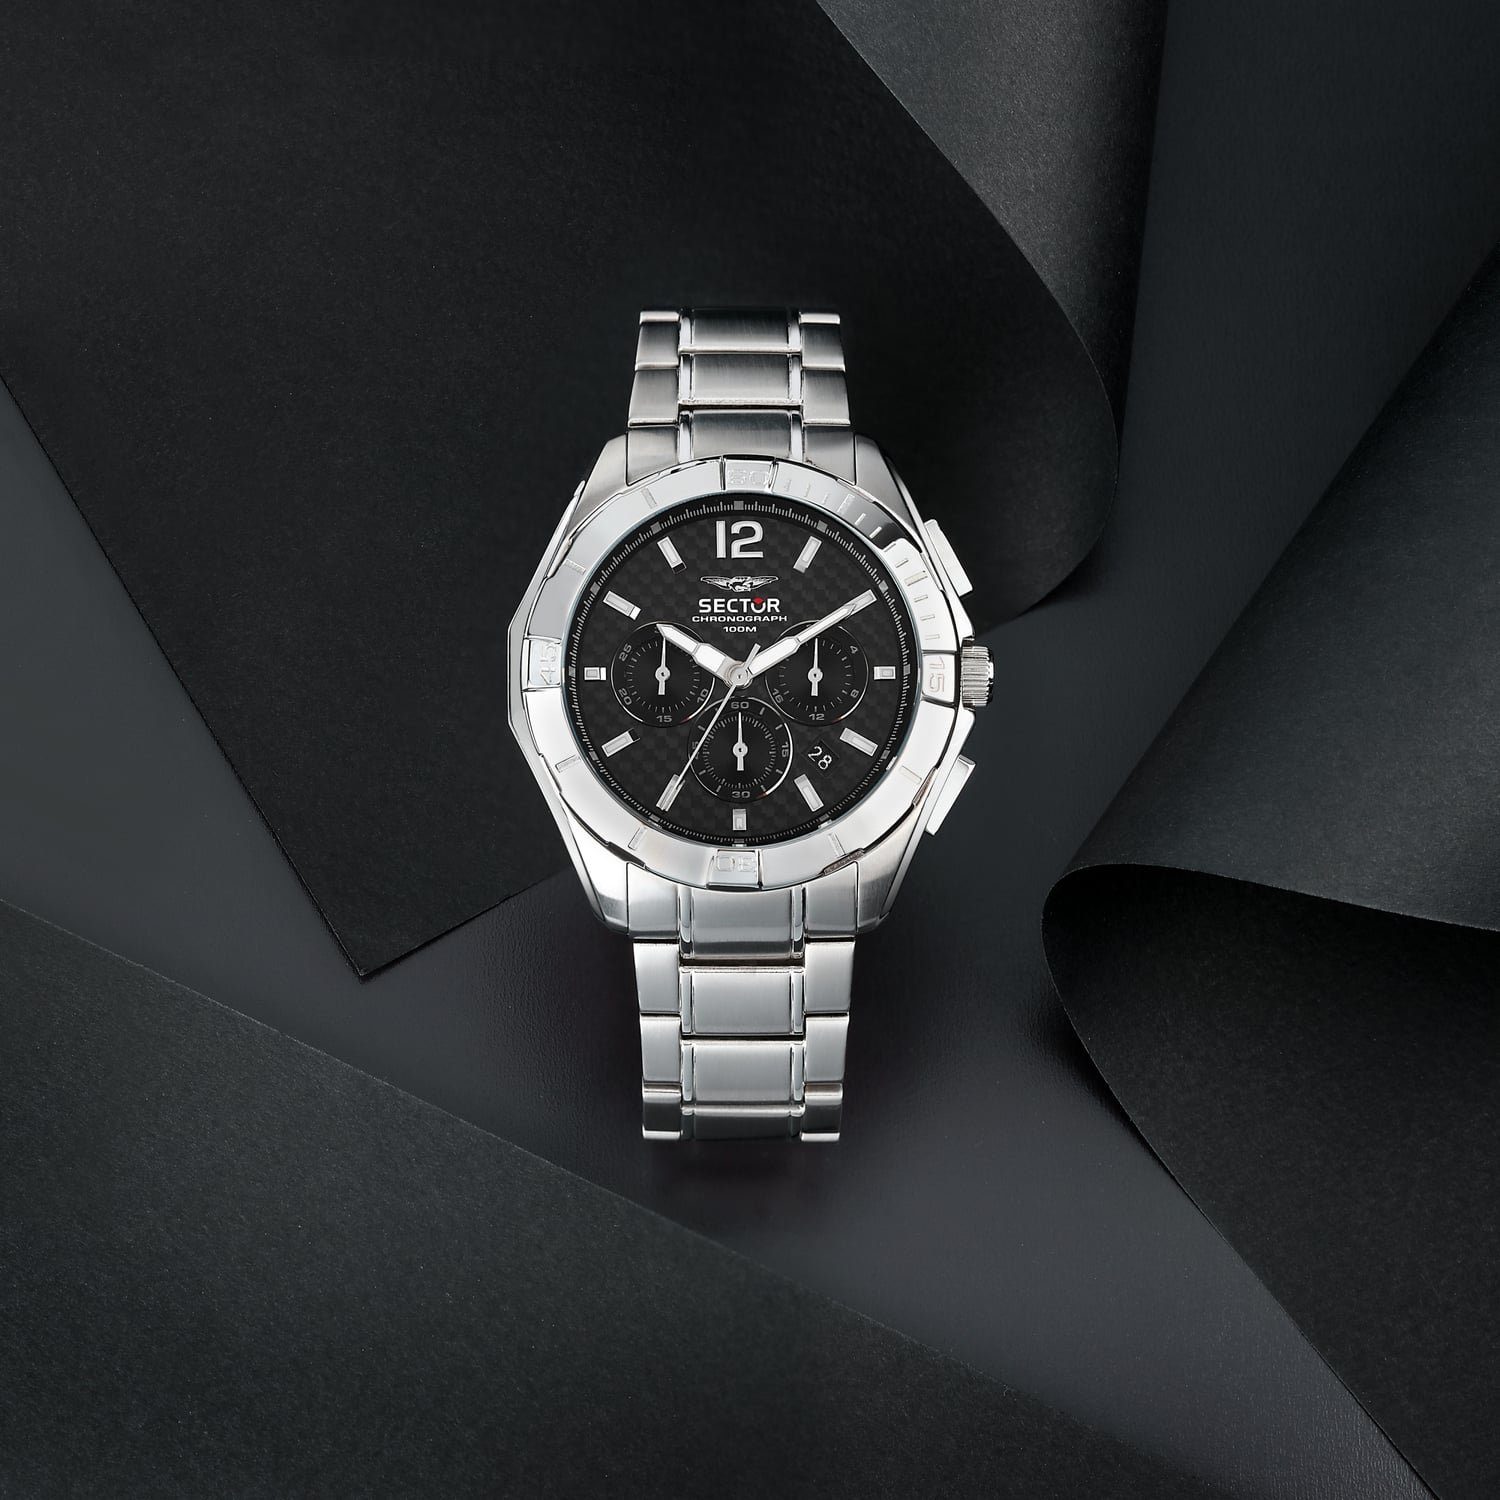 Herren Chrono, groß Sector silber, Herren (48mm), Sector Fashion Edelstahlarmband Chronograph Armbanduhr rund, Armbanduhr